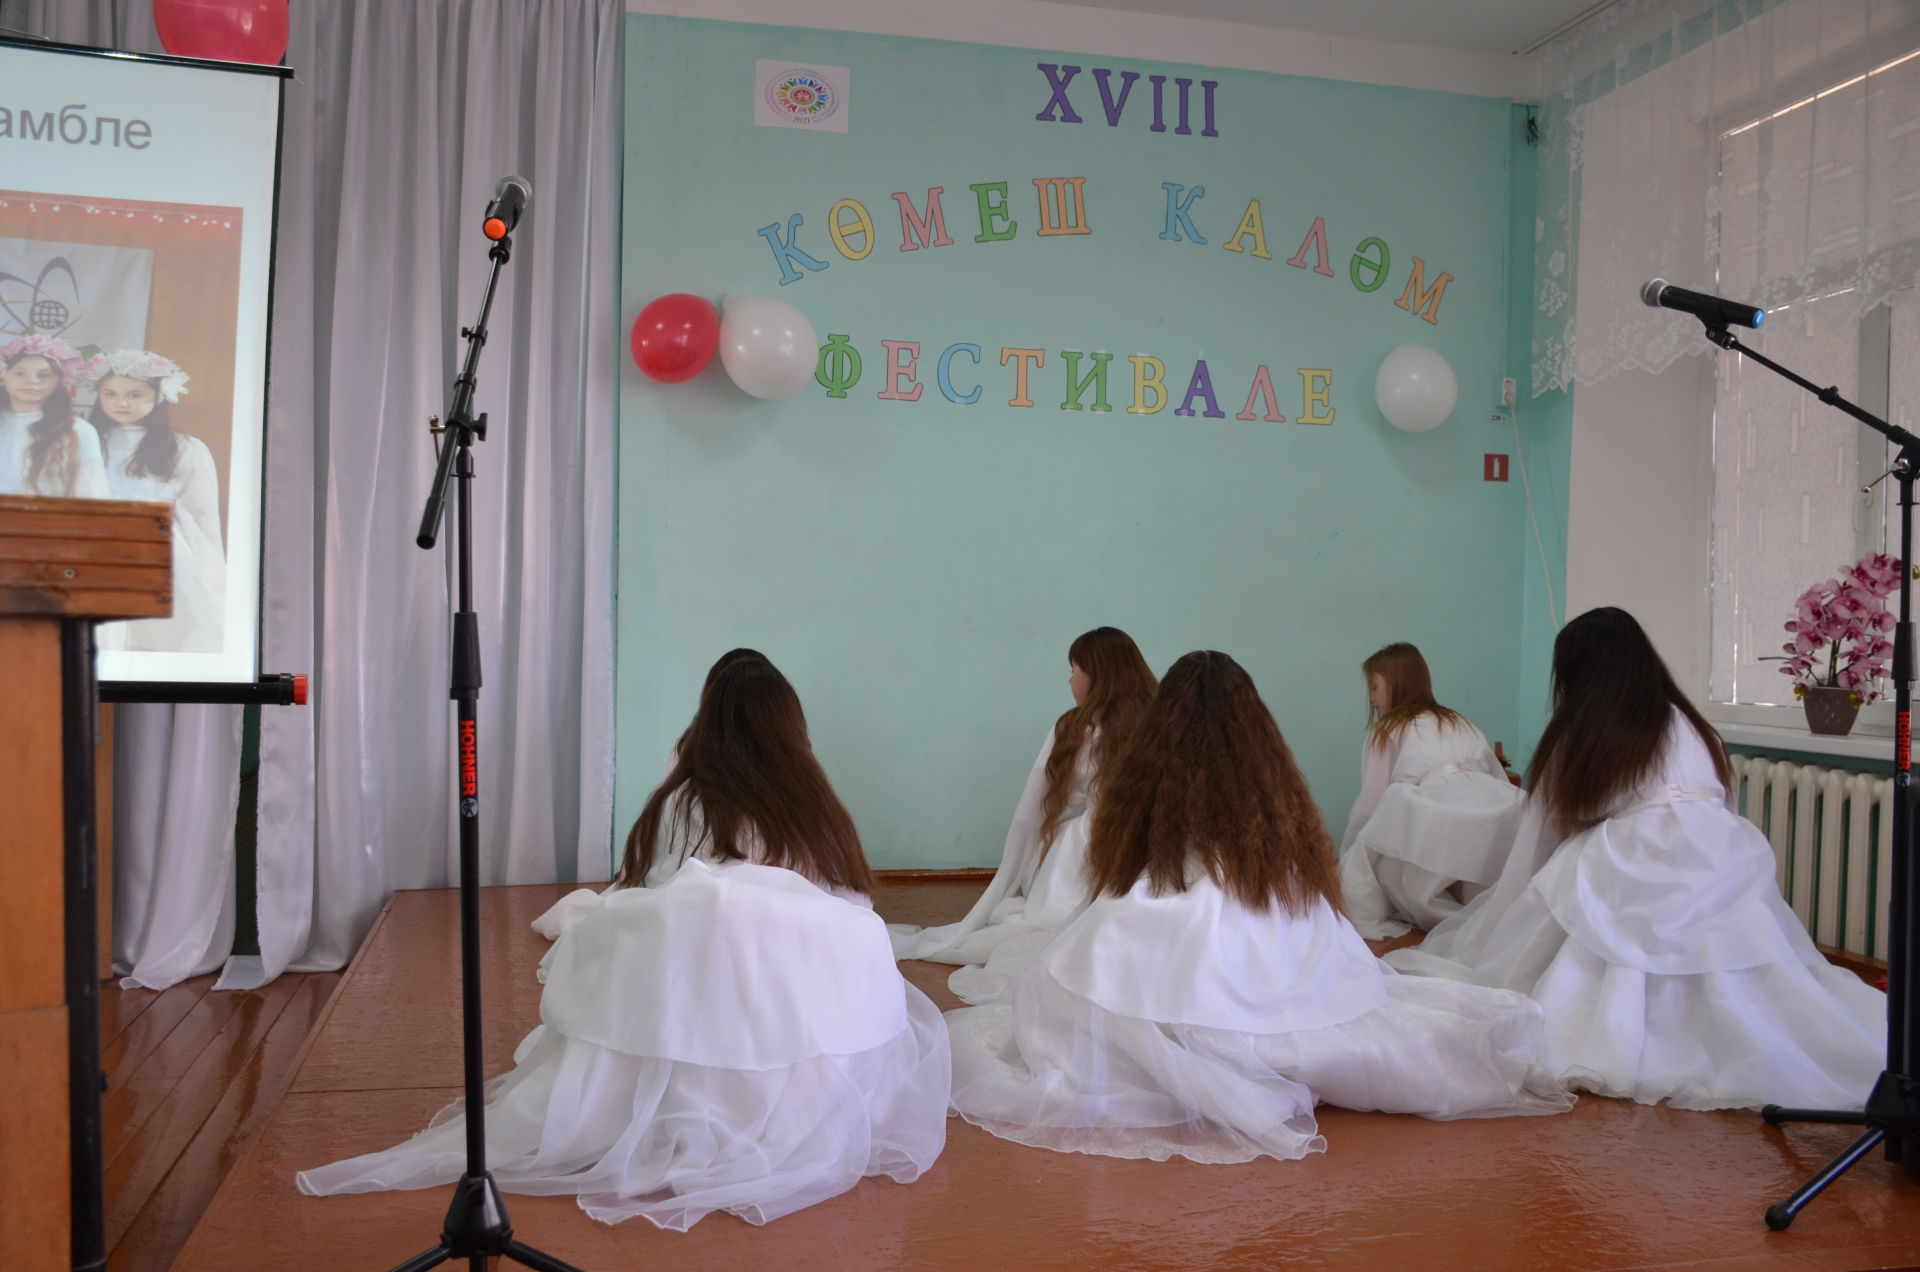 Әгерҗе районы Девятерня мәктәбендә XVIII «Көмеш каләм» фестивале үтте.